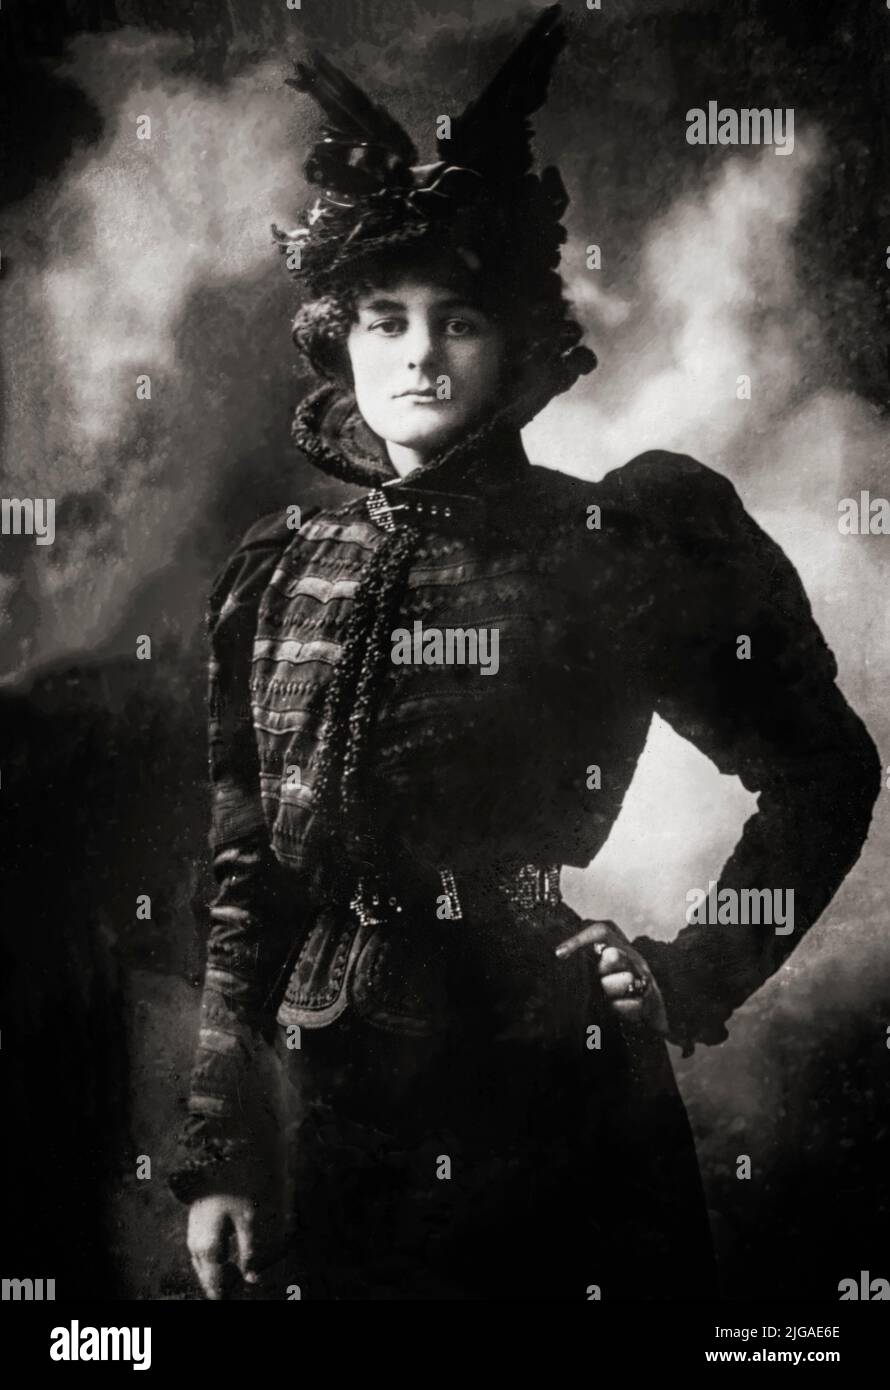 Ein Porträt von Maud gonne MacBride (1866-1953), einer in Irland geborenen Revolutionärin, Frauenrechtlerin und Schauspielerin. Anglo-irische Abstammung, konvertierte sie nach der Notlage der in den Landkriegen vertrieben Menschen zum irischen Nationalismus. Sie agitierte aktiv für die häusliche Herrschaft und dann für die republik, die 1916 ausgerufen wurde. Sie war auch bekannt für ihre Muse und ihr langzeitiges Liebesinteresse des irischen Dichters W. B. Yeats. Stockfoto